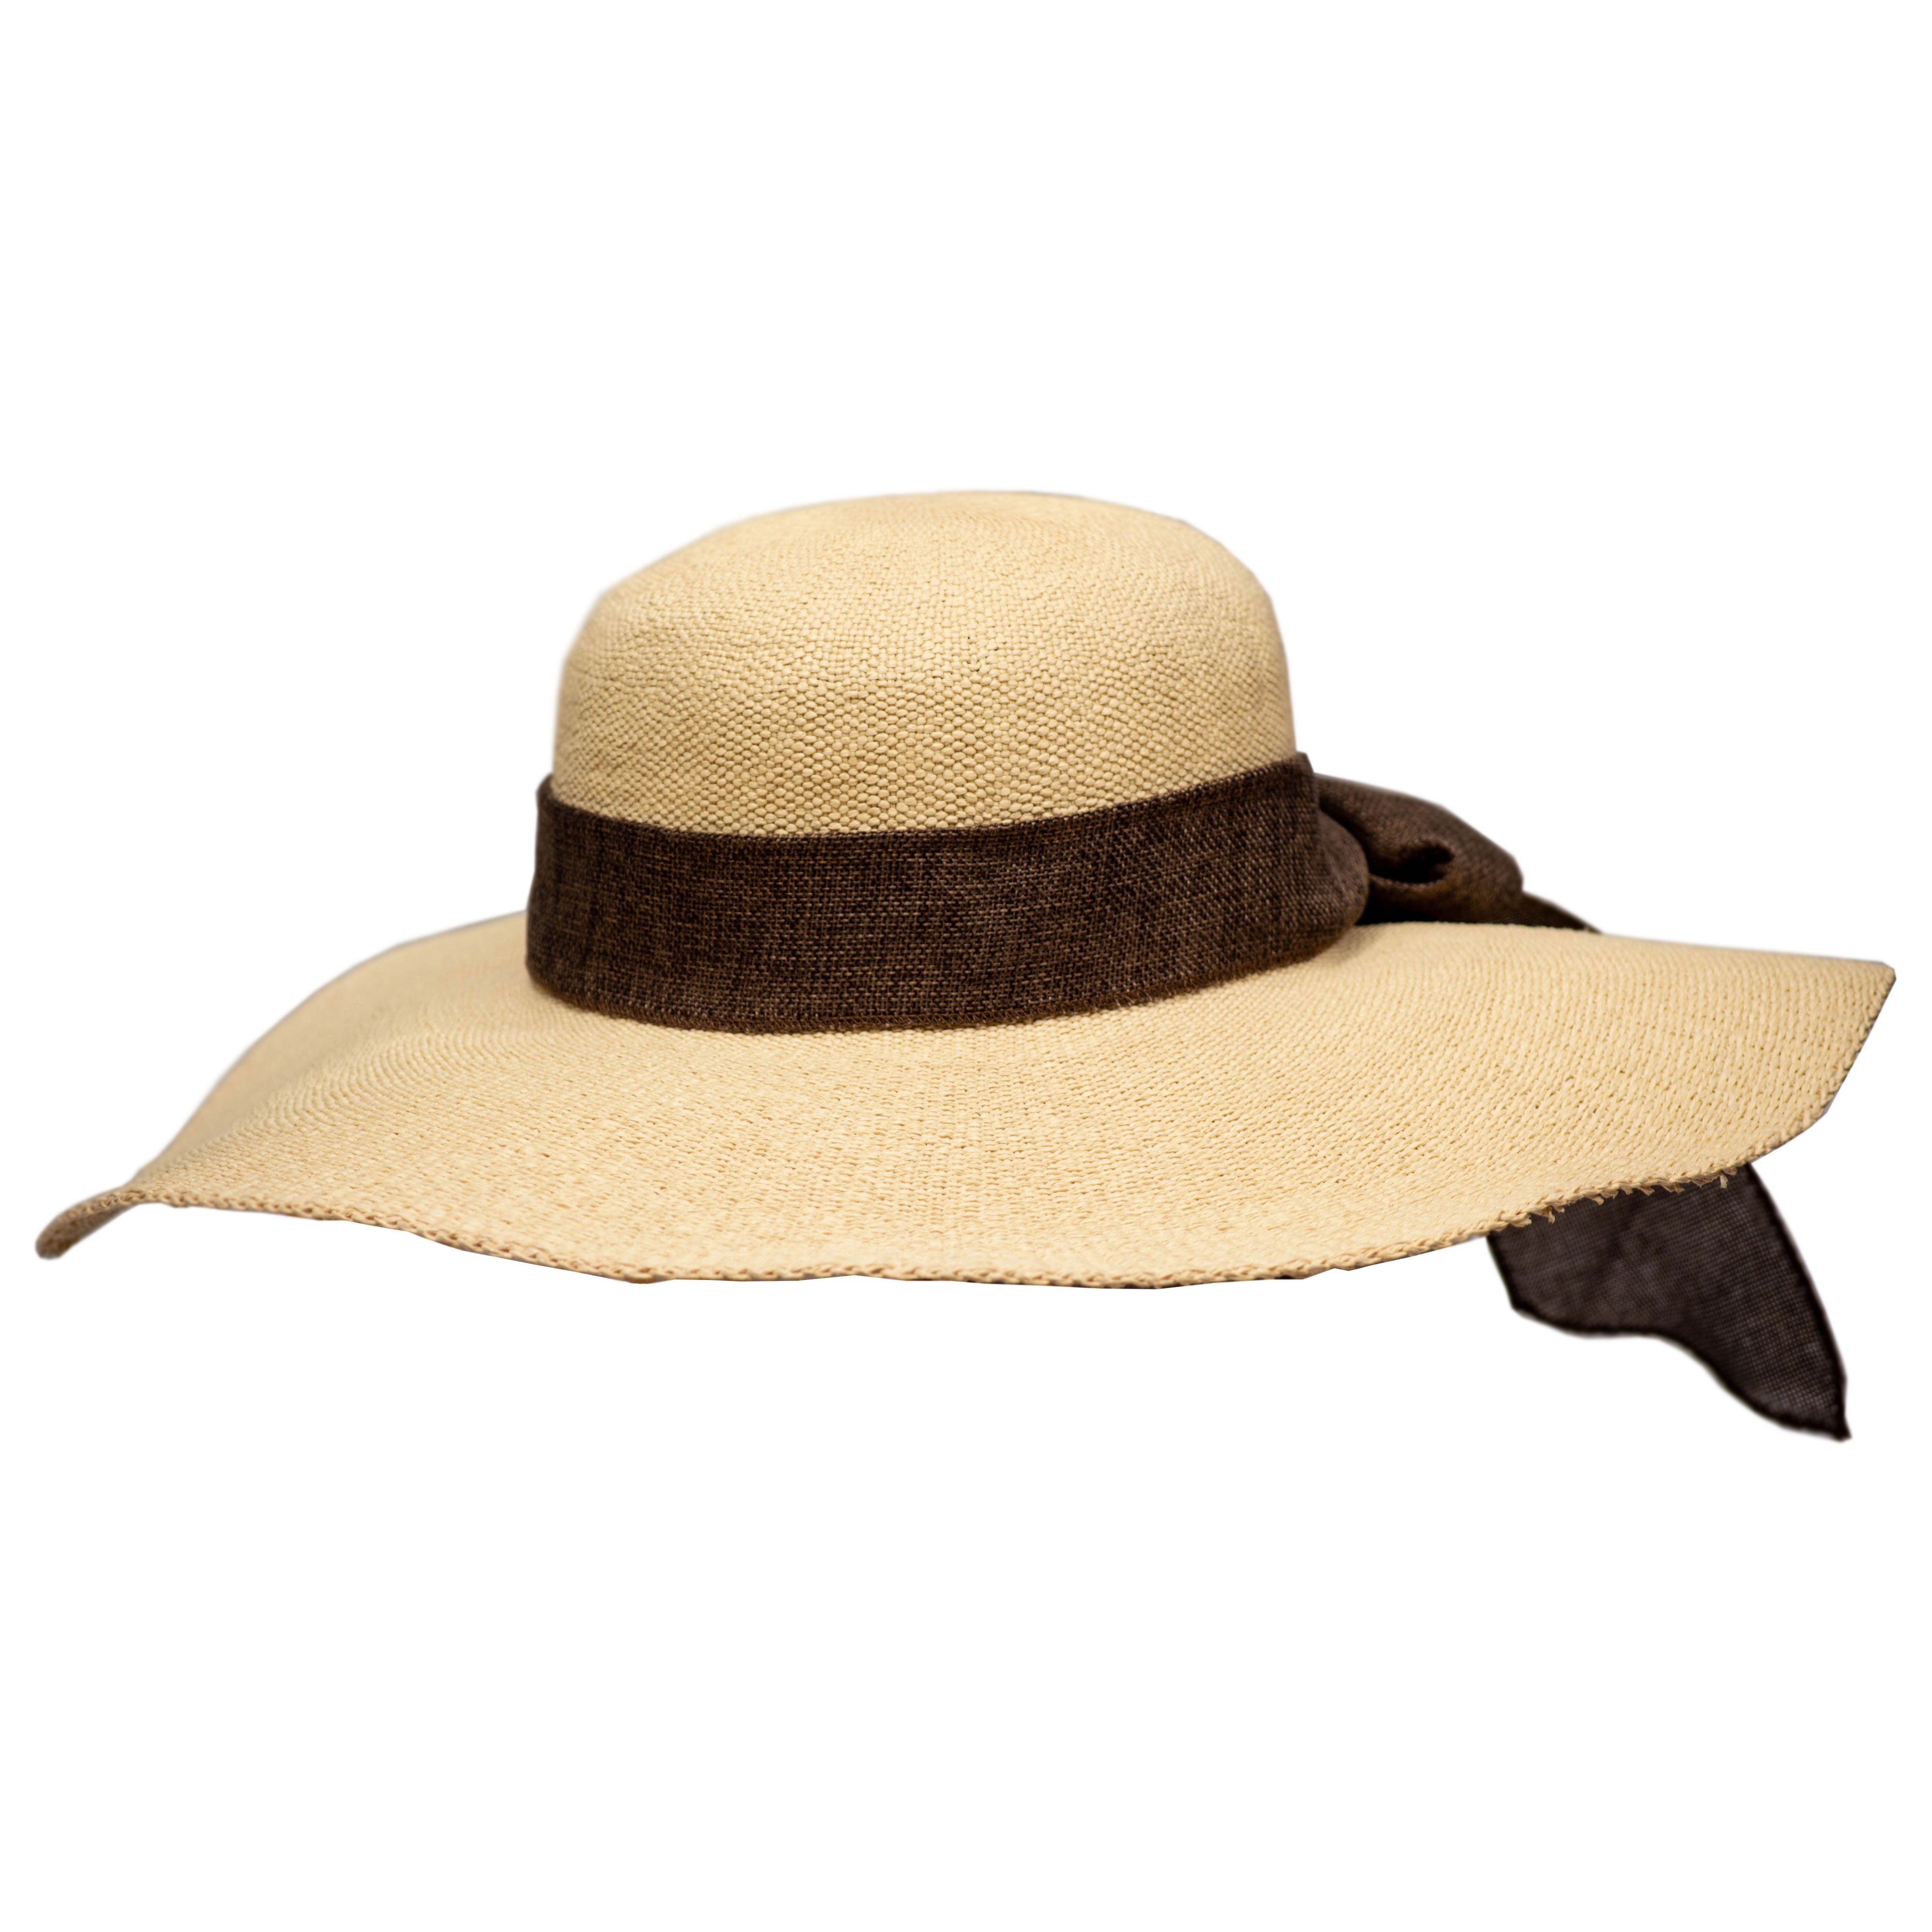 giant sun hat Woven summer hats for women beach hats for women Outdoor Hat  Sun P